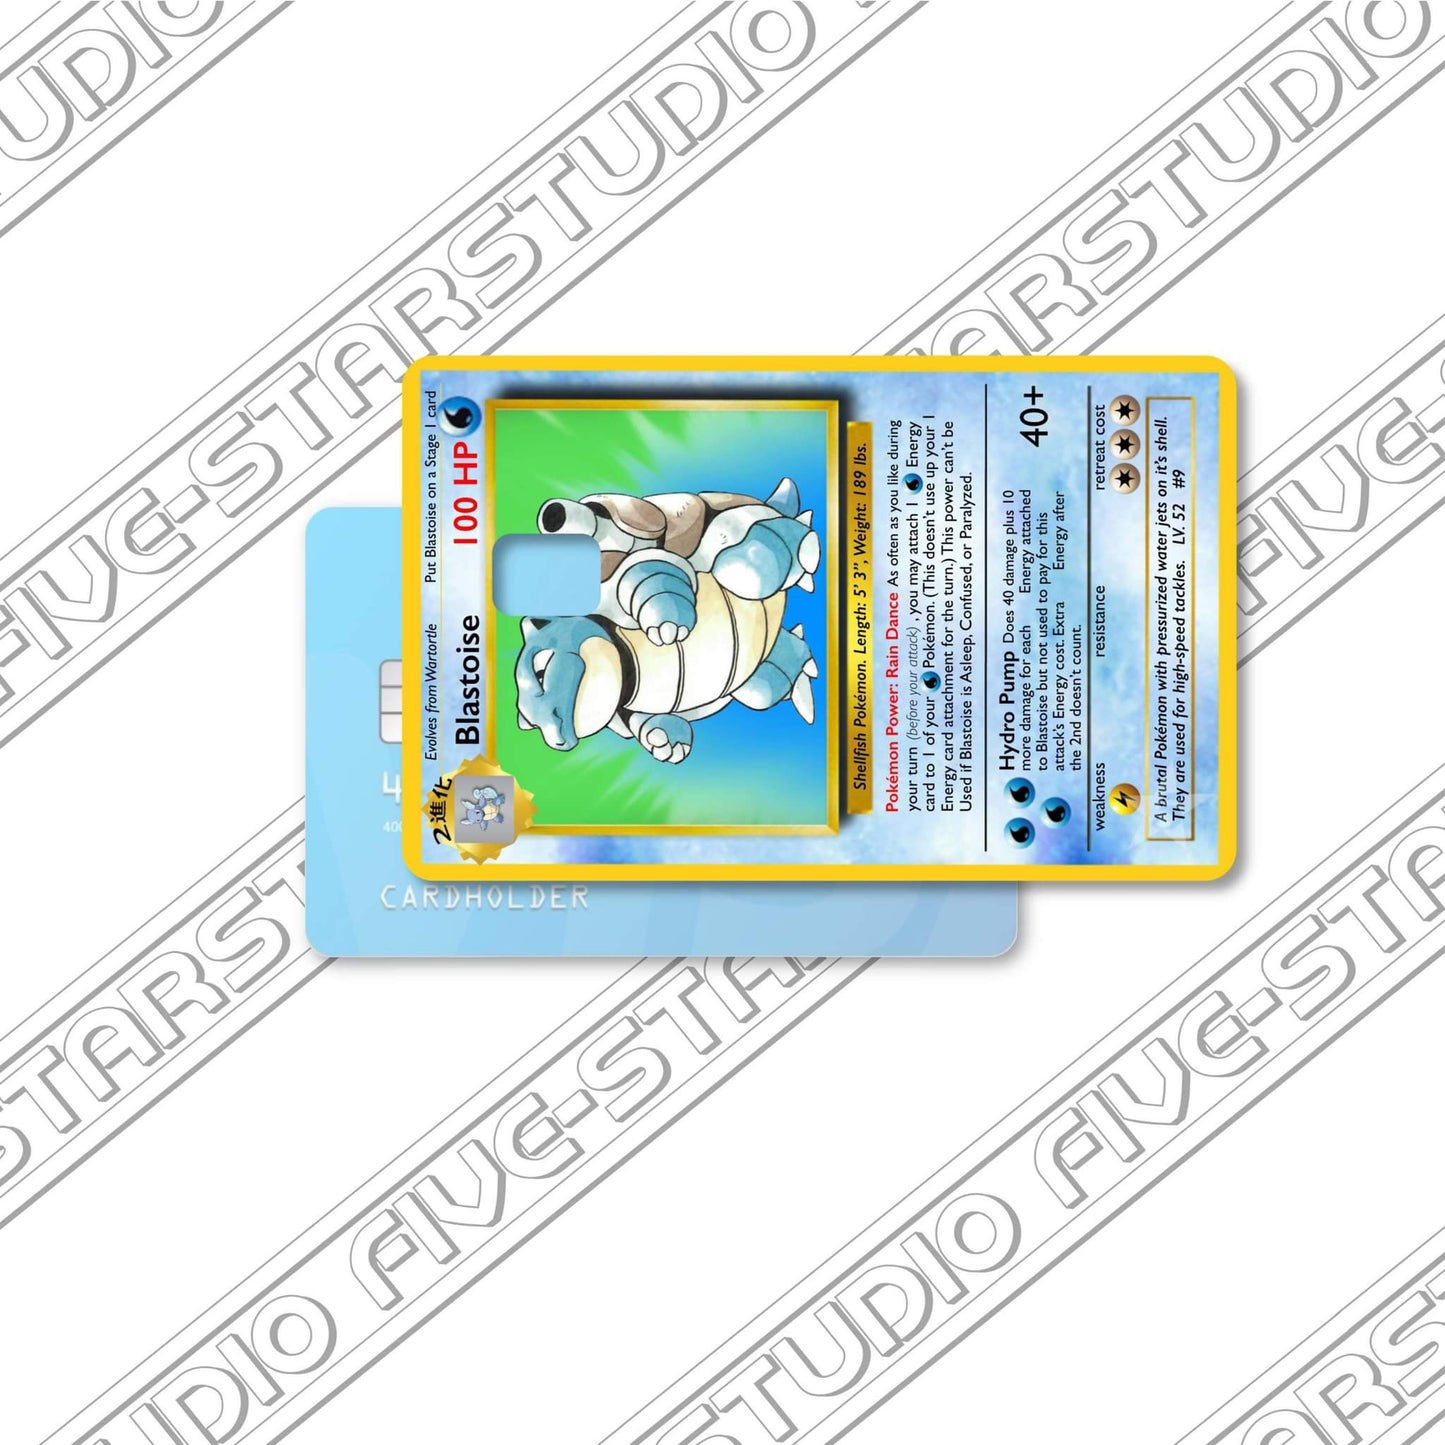 Blastoise / Pokemon [CARDSKIN]